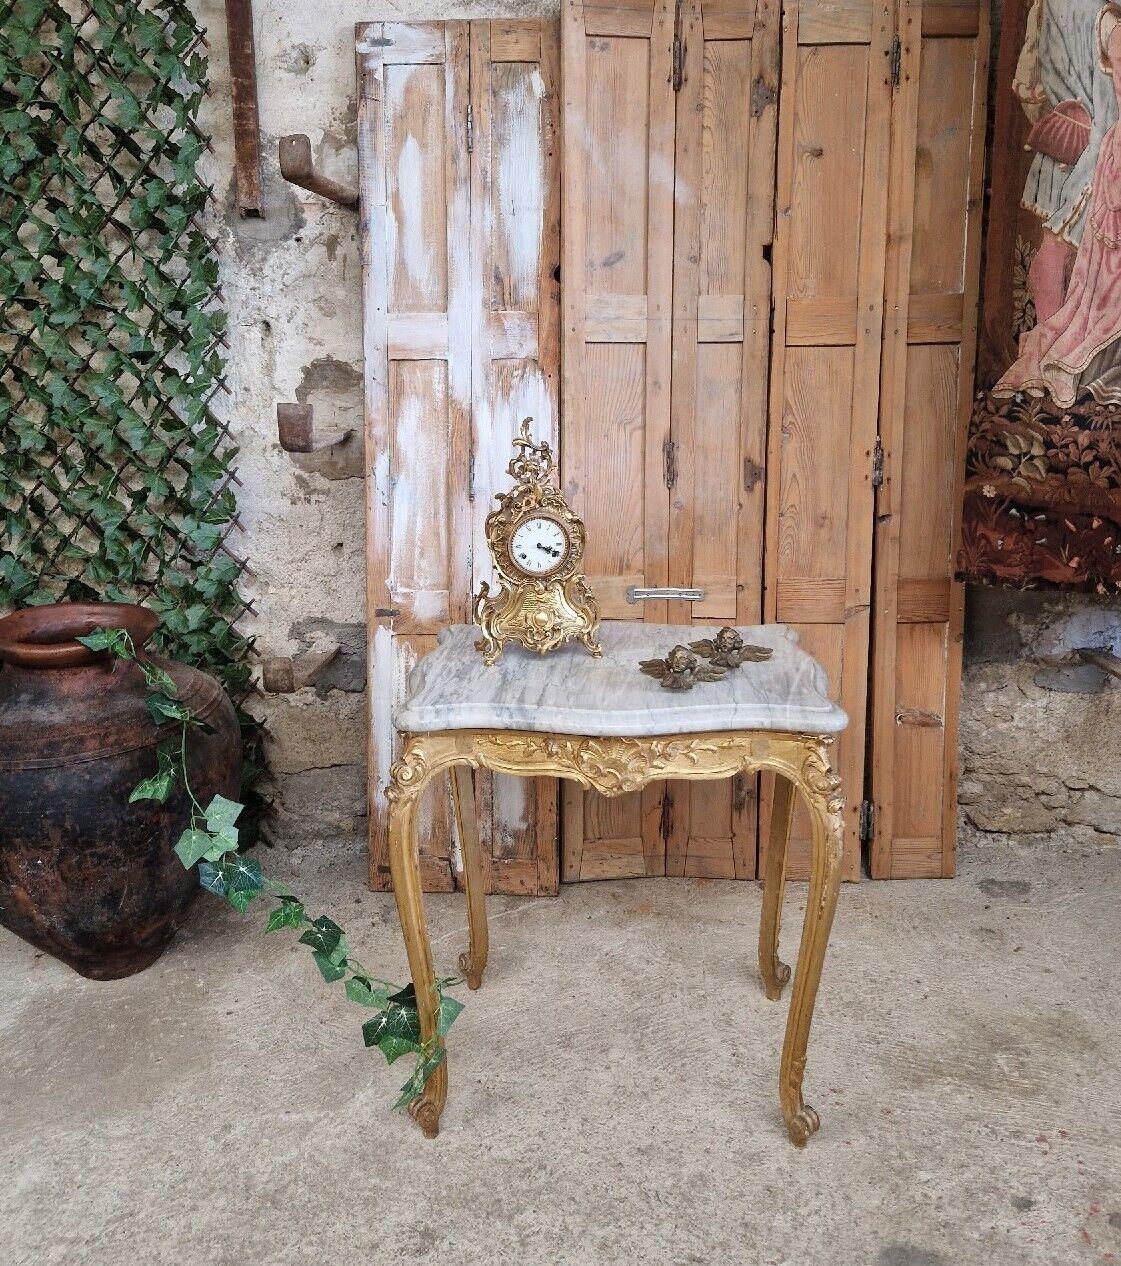 Cette magnifique table d'appoint française de forme rectangulaire est idéale pour de nombreux usages et peut trouver sa place dans n'importe quelle pièce.

La base de la table est en bois doré et de style Louis XV. Le plateau de marbre est une